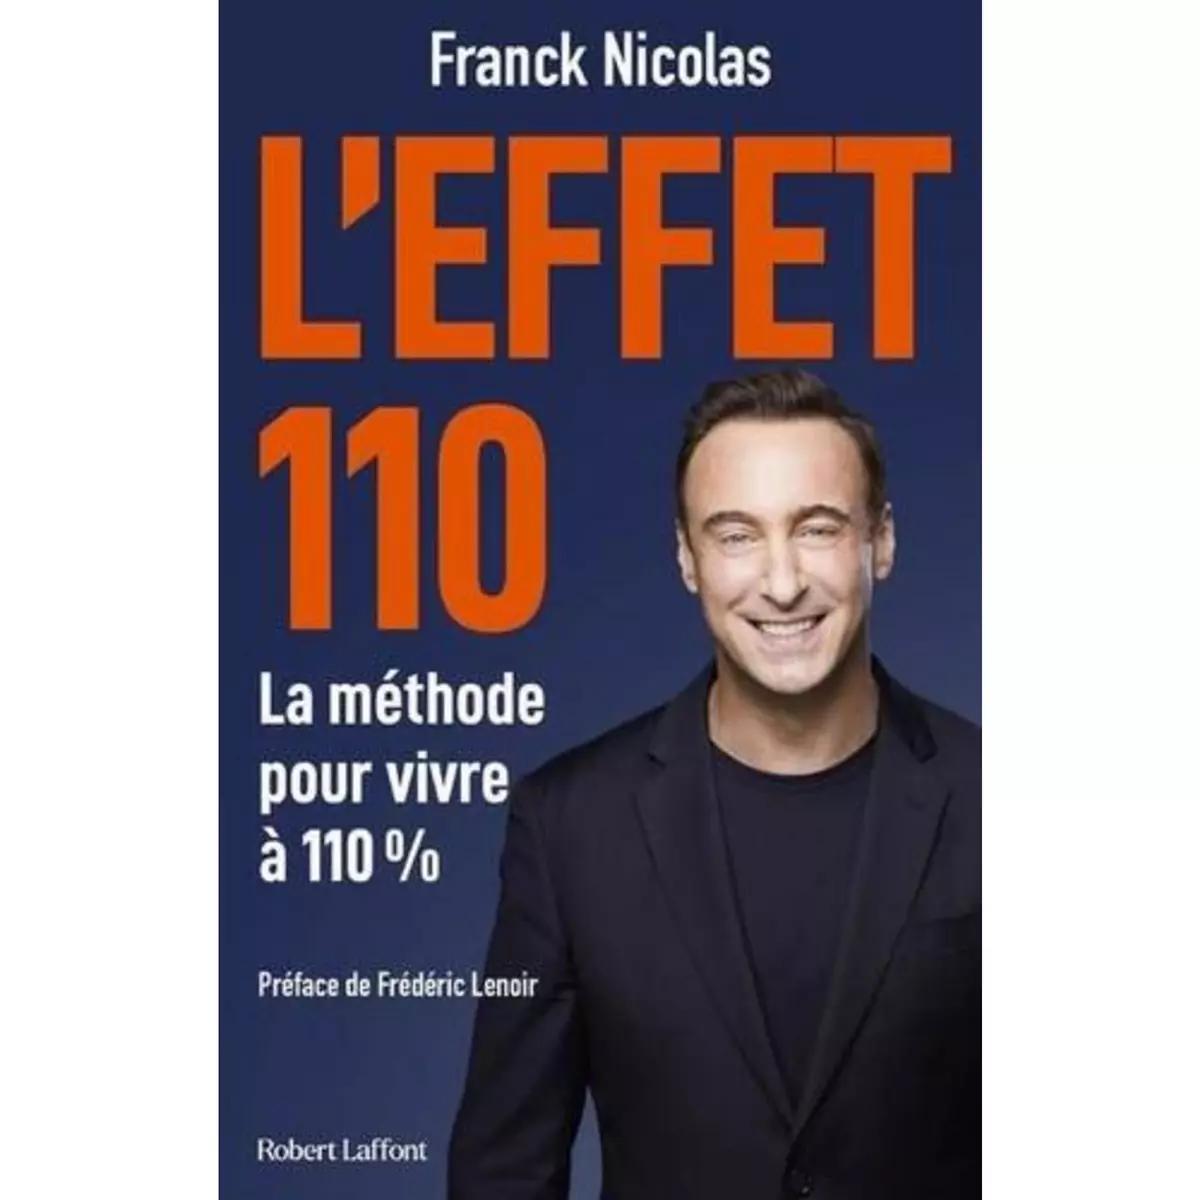  L'EFFET 110. COMMENT ENRICHIR SA VIE ET SA CARRIERE A 110% ET DECUPLER SES RESULTATS, Nicolas Franck